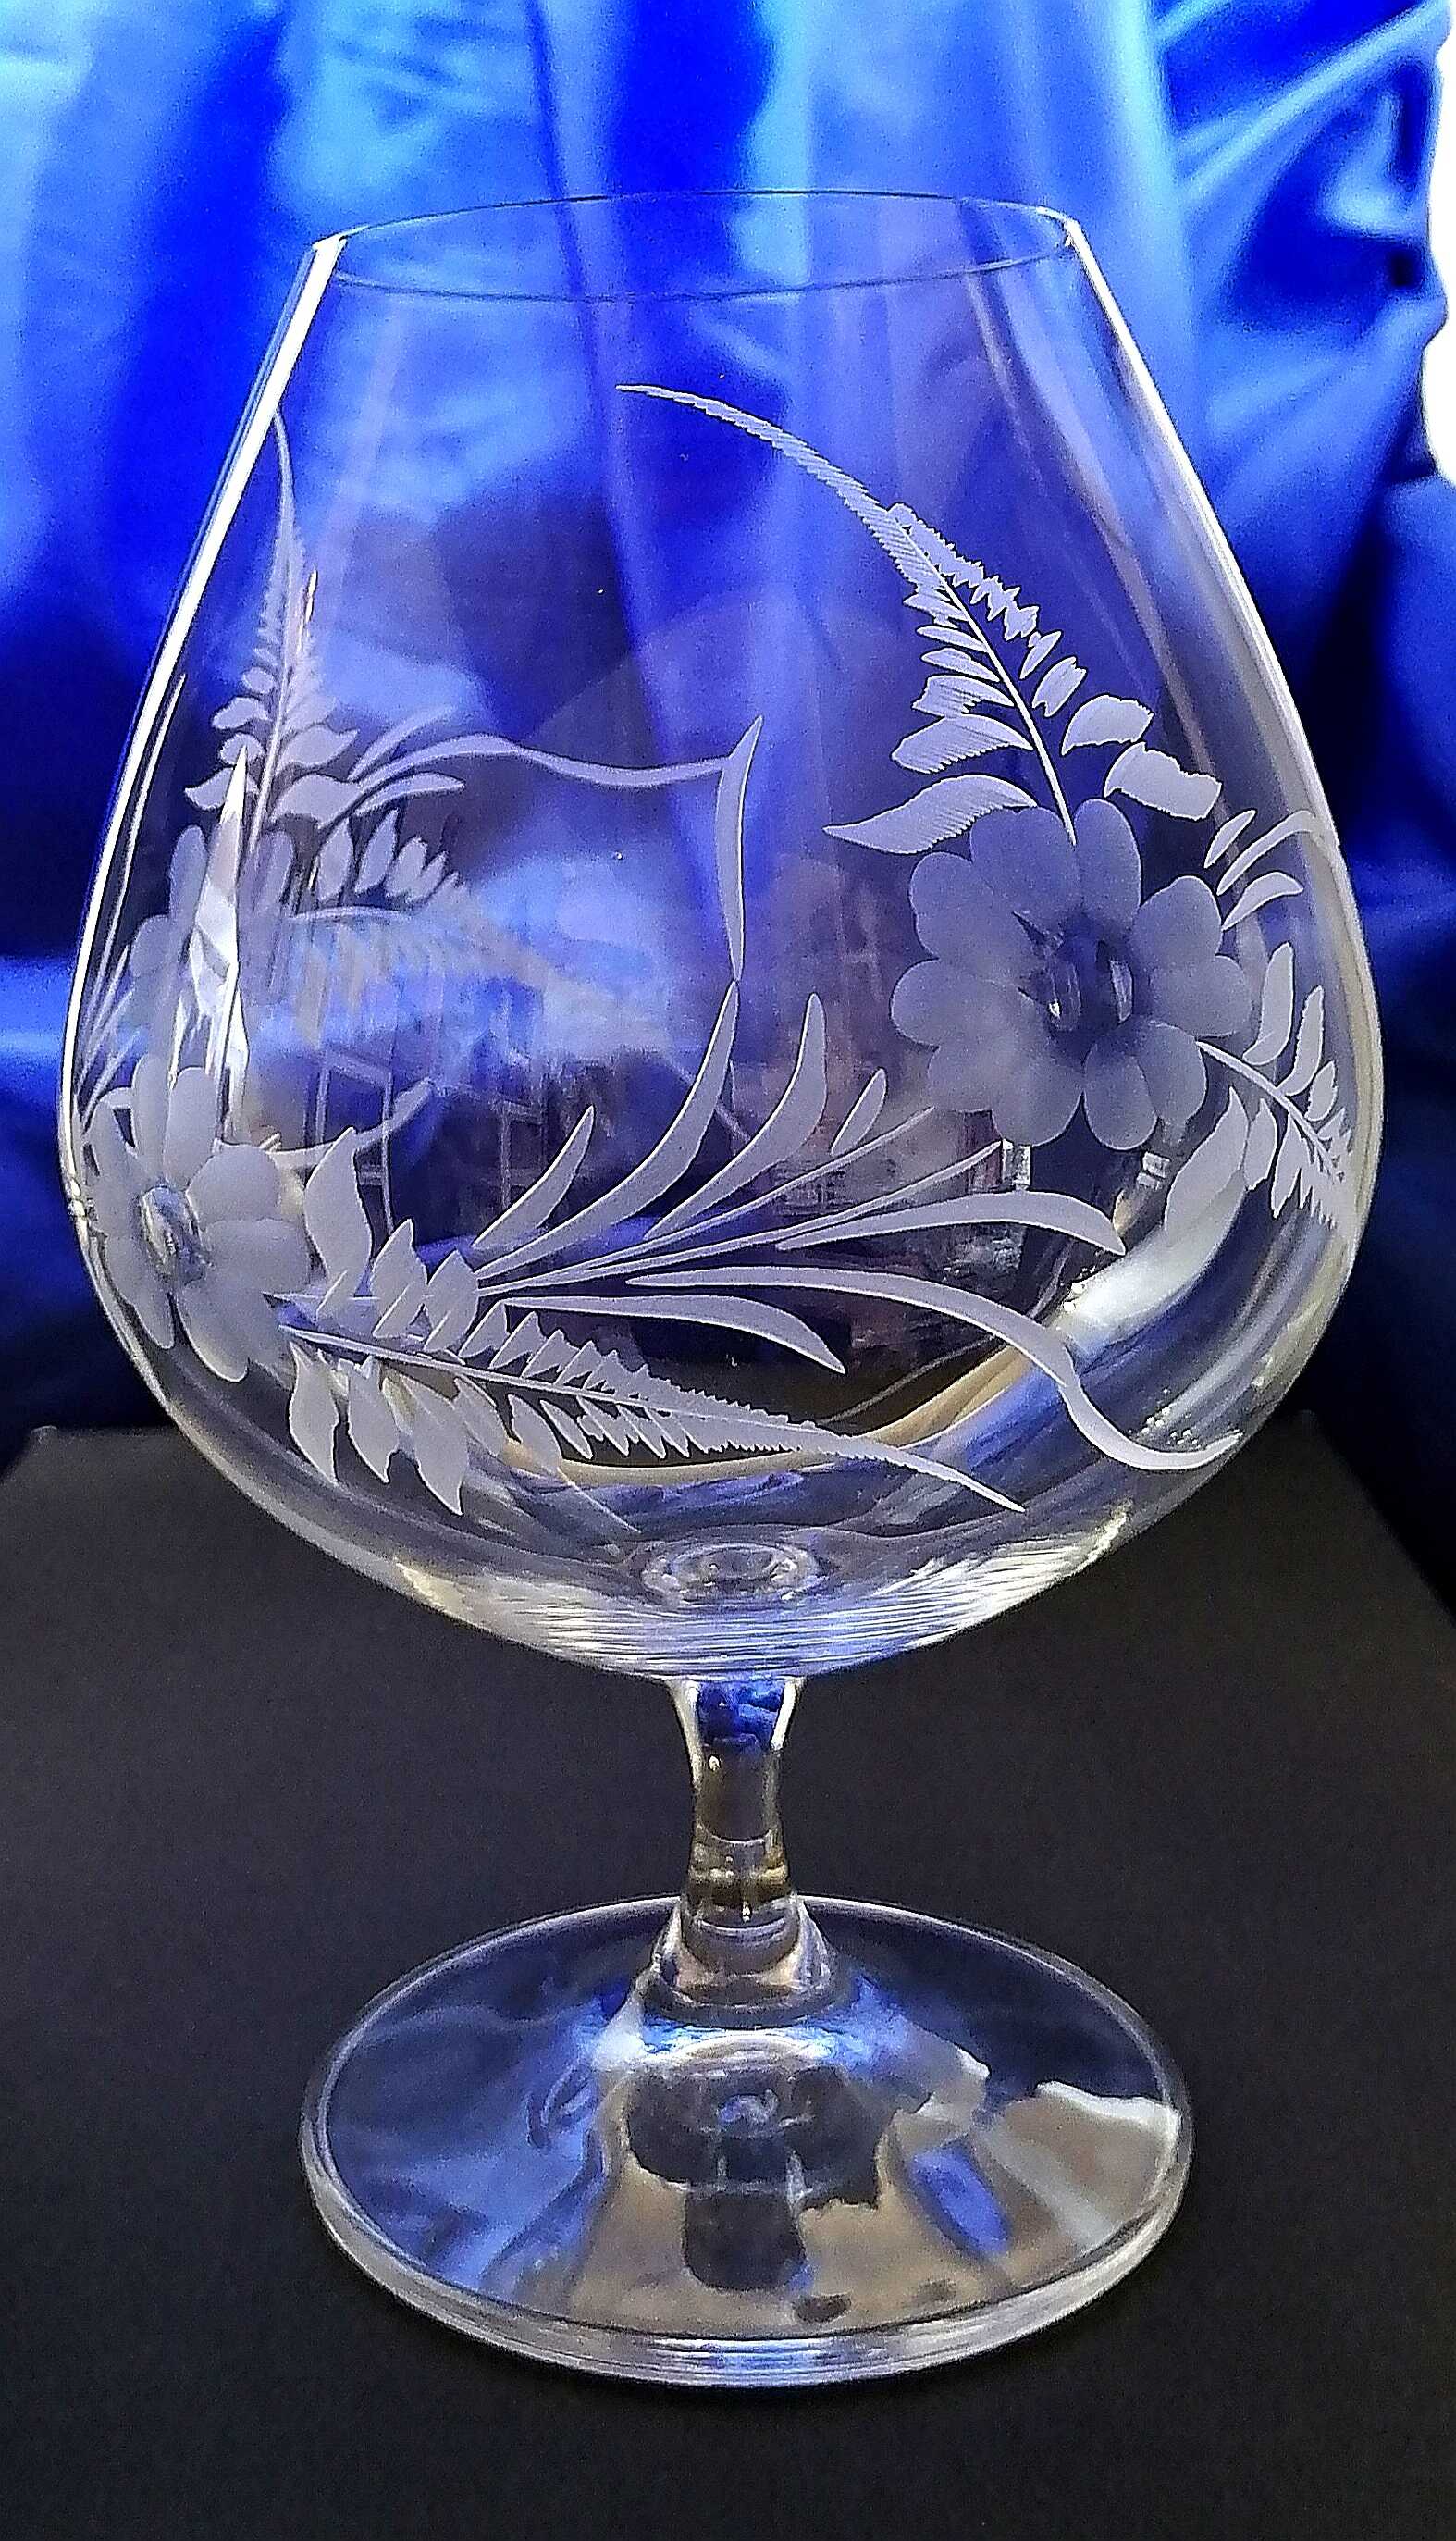 LsG-Crystal Jubilejní výroční sklenička číše  ručně ryté broušené dekor květina J-956 880 ml 1 Ks.